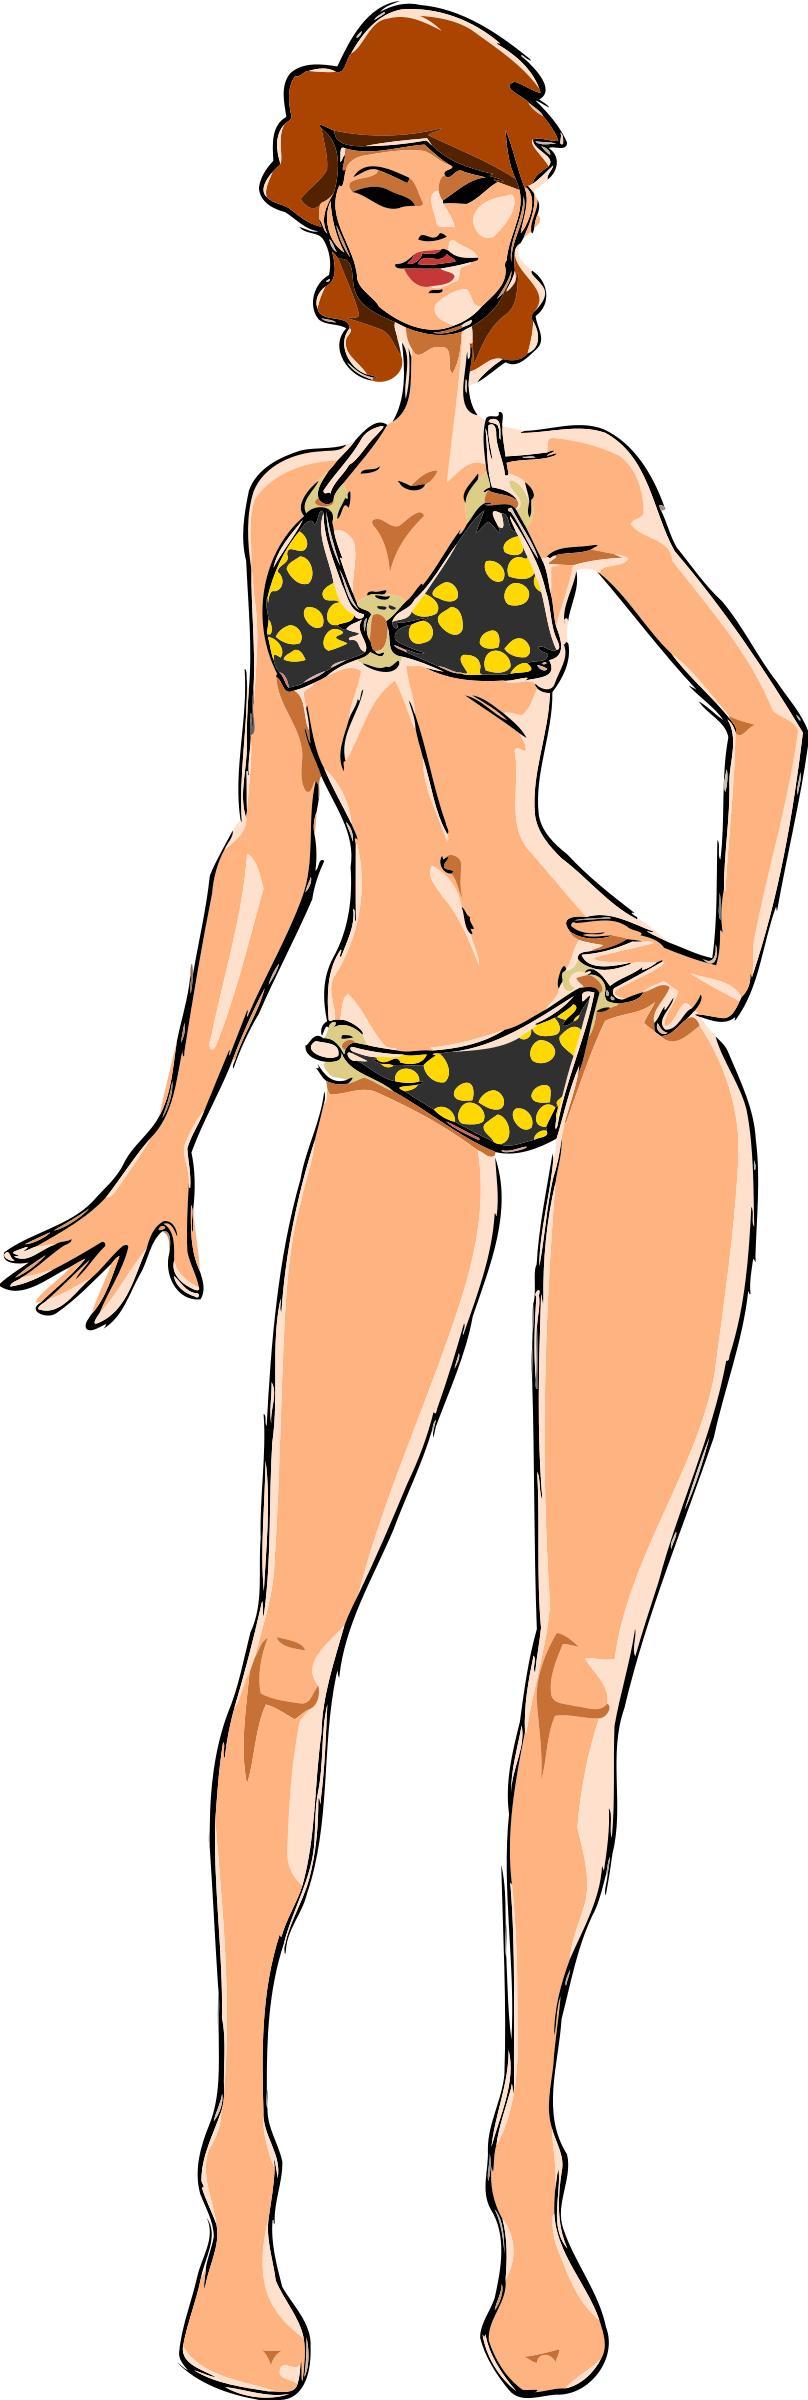 Woman in bikini 3 png transparent